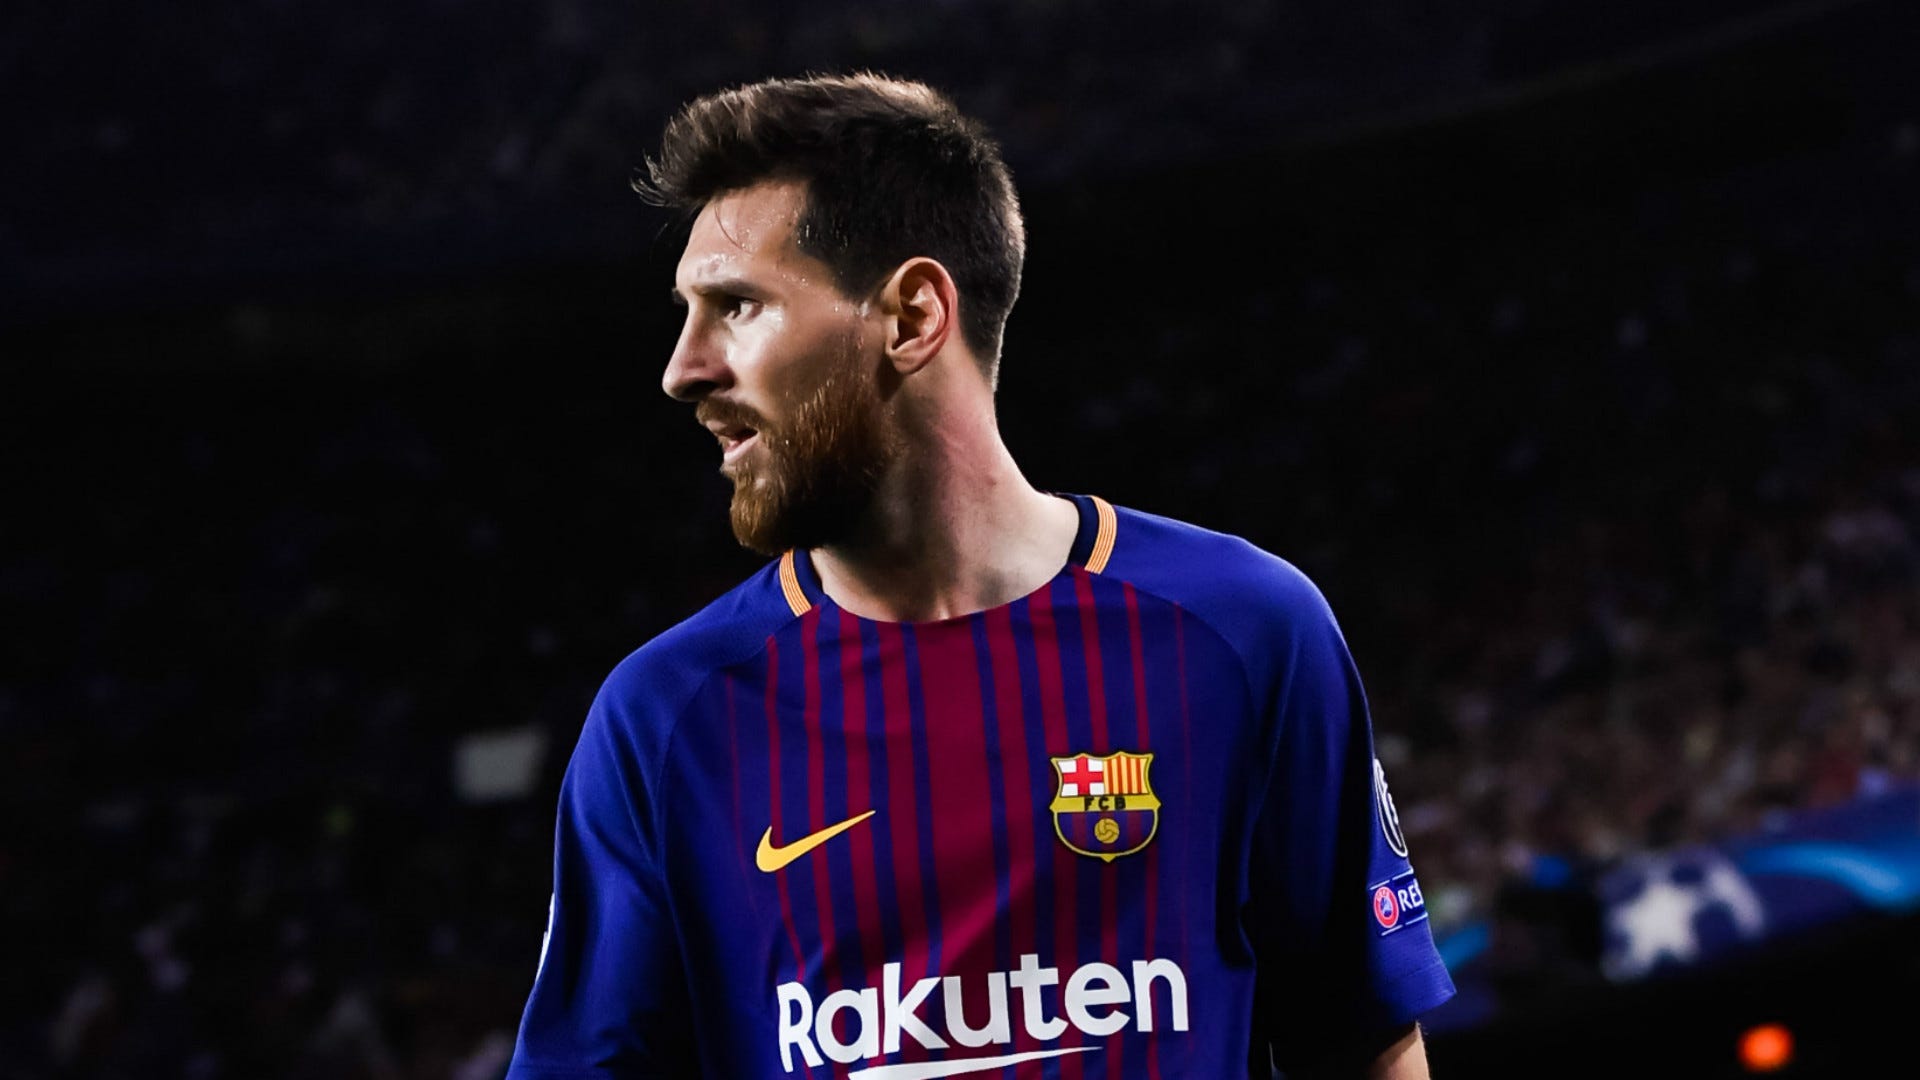 Câu lạc bộ Barca đã gây bất ngờ lớn khi kí hợp đồng trọn đời với thần đồng Lionel Messi. Xem những bức ảnh về hợp đồng ký kết này và cảm nhận sự thật rằng Messi sẽ là một phần tuyệt vời trong lịch sử CLB.